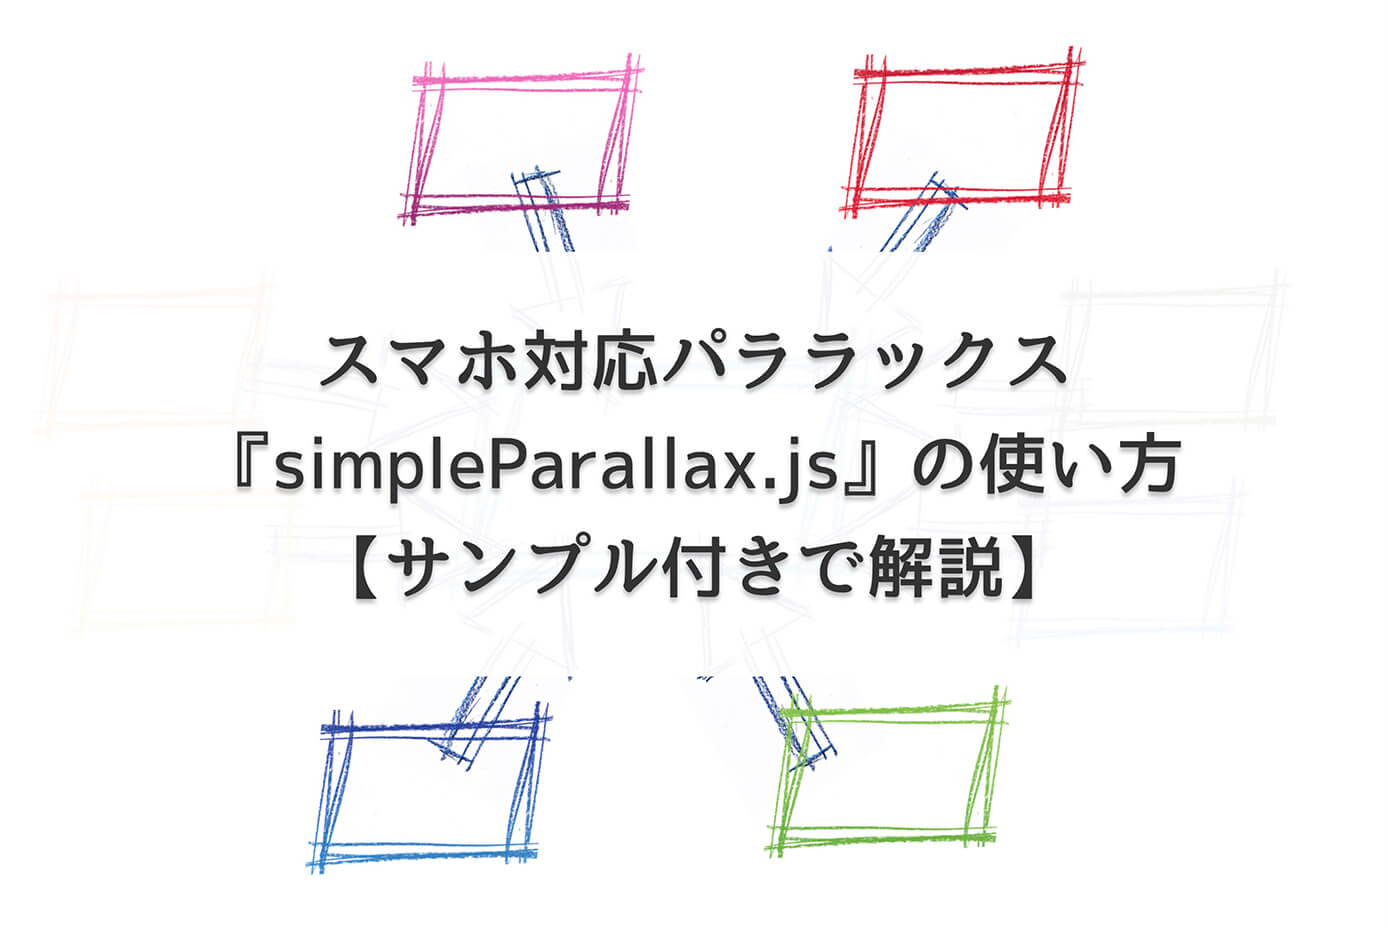 スマホ対応パララックス『simpleParallax.js』の使い方【サンプル付きで解説】